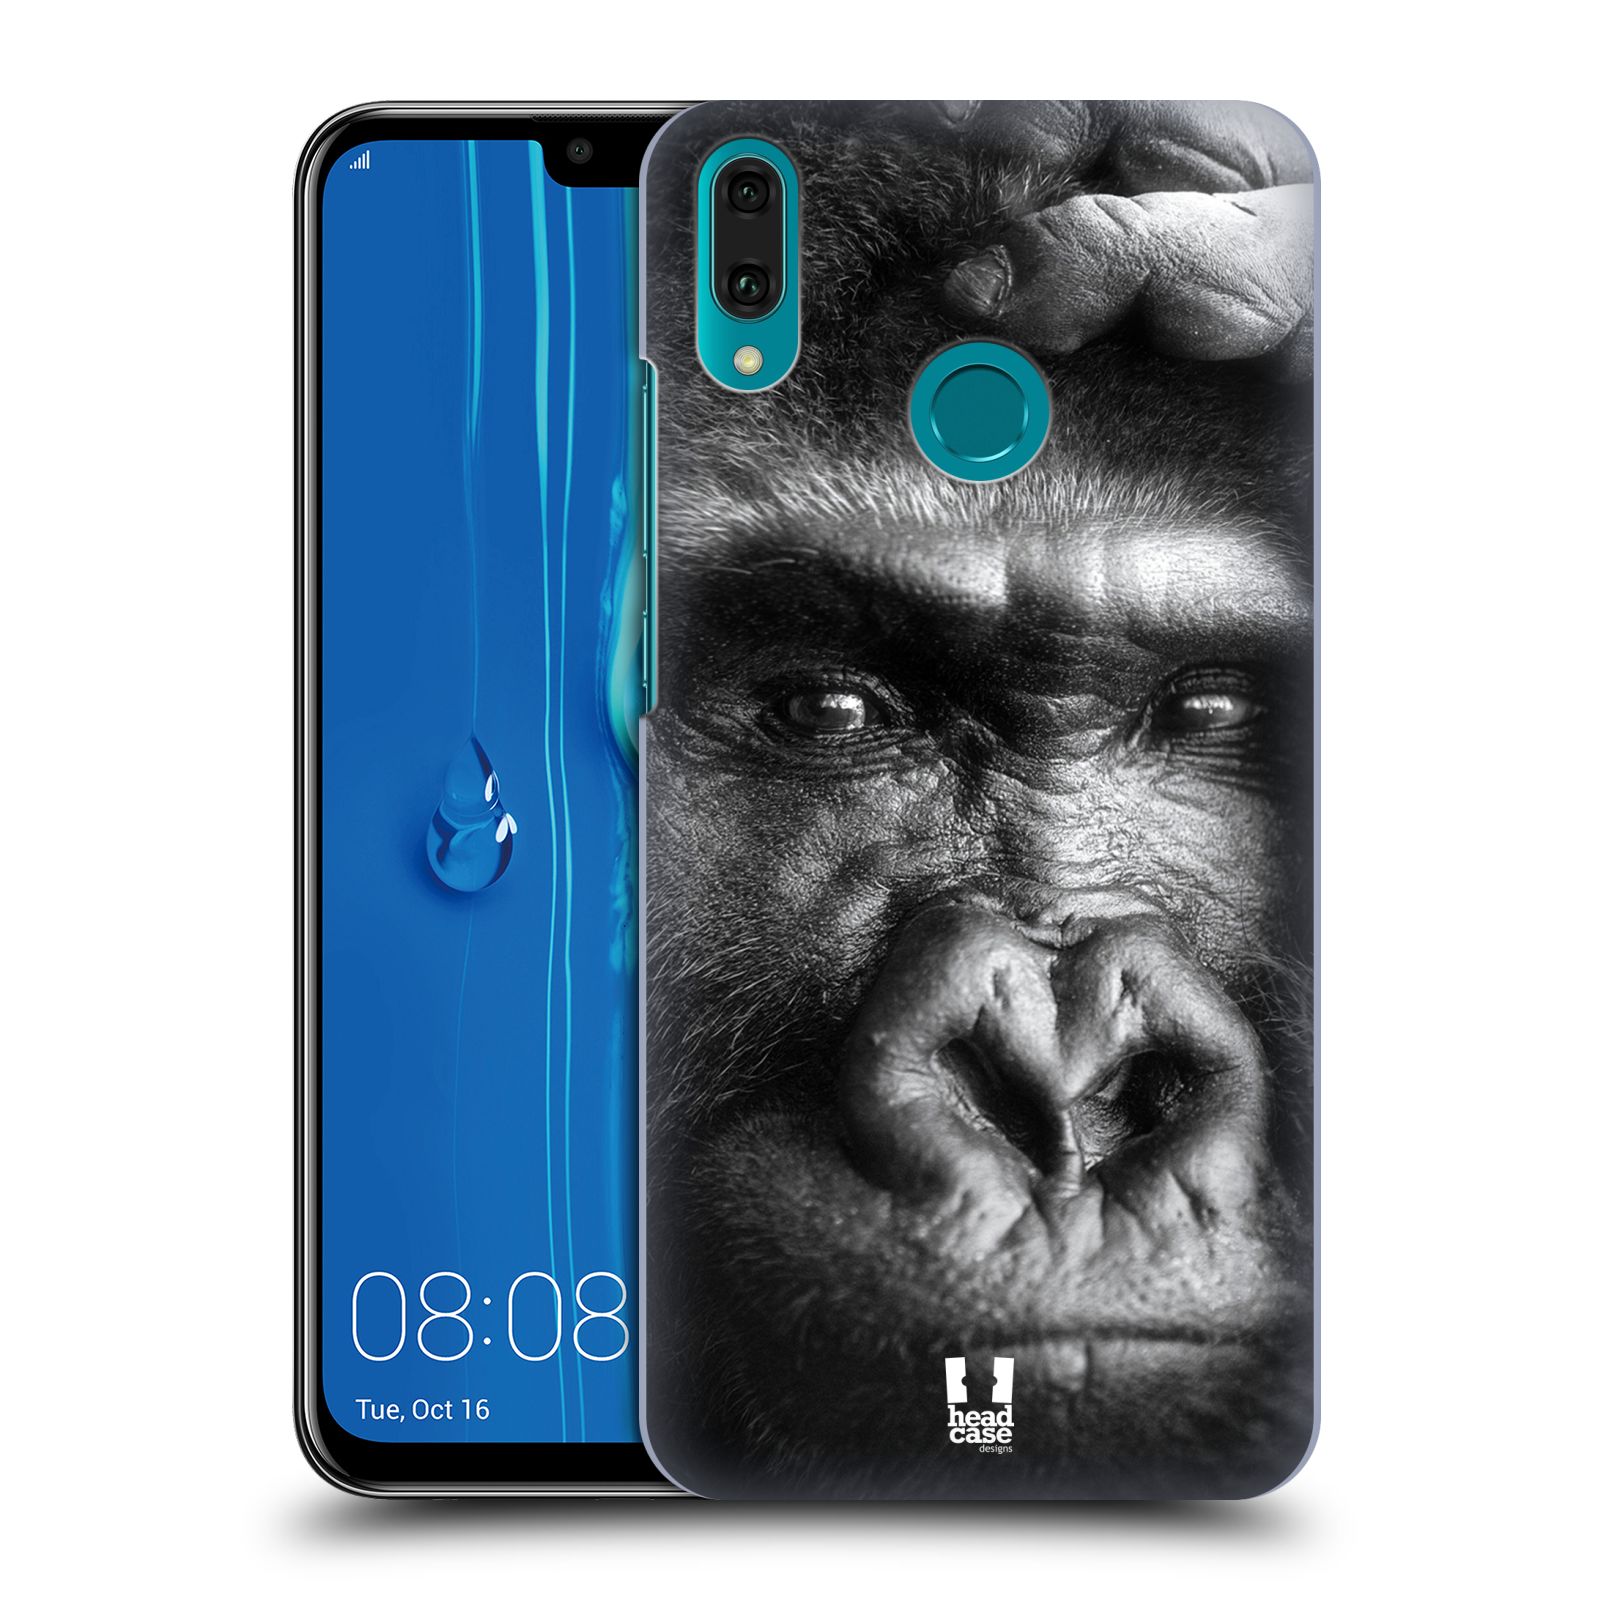 Pouzdro na mobil Huawei Y9 2019 - HEAD CASE - vzor Divočina, Divoký život a zvířata foto GORILA TVÁŘ